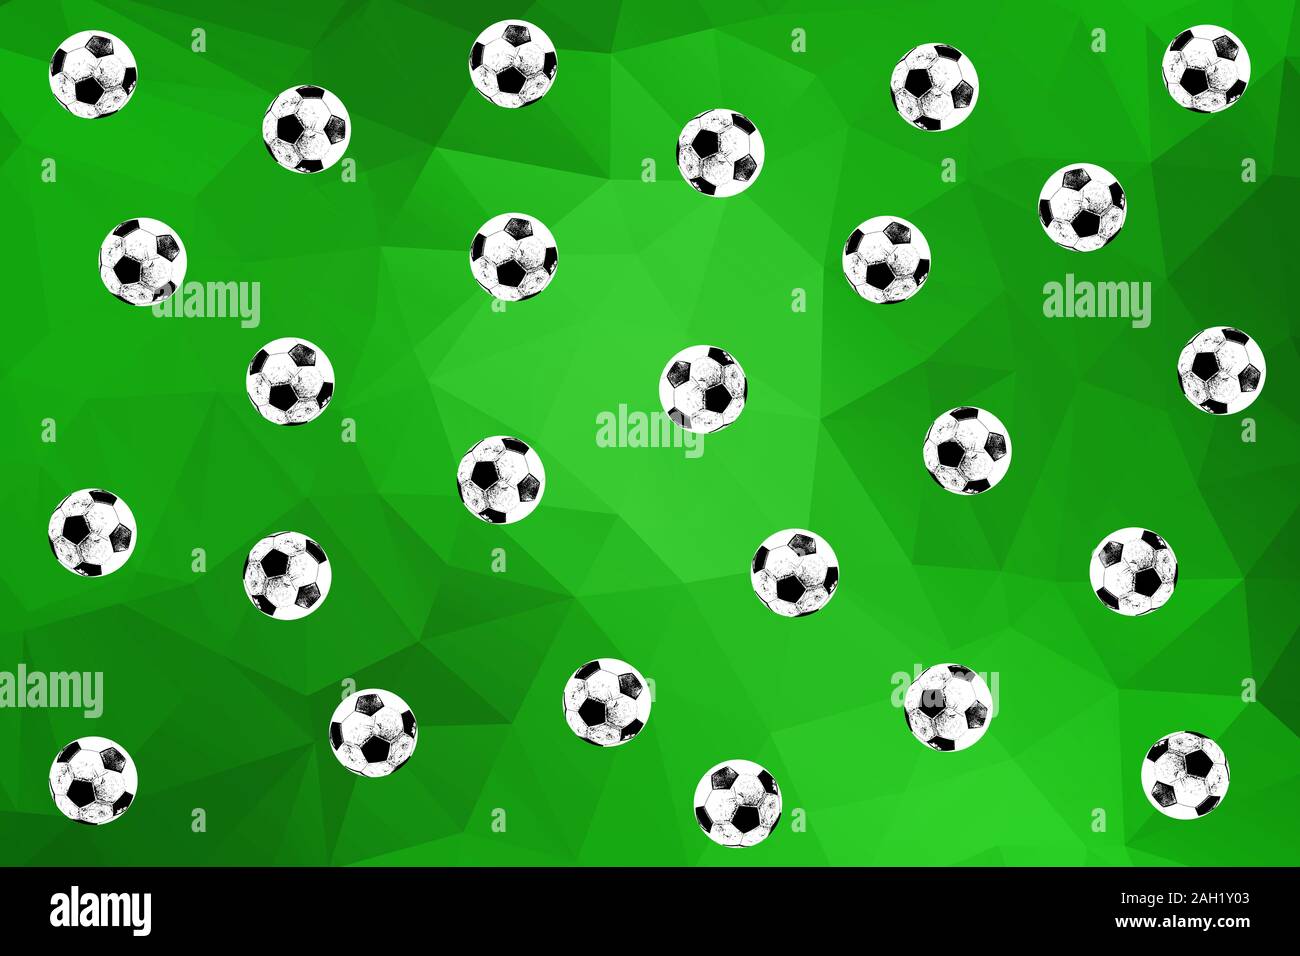 Zine colorido estilo retro fútbol Pelotas cayendo sobre un fondo geométrico verde Foto de stock